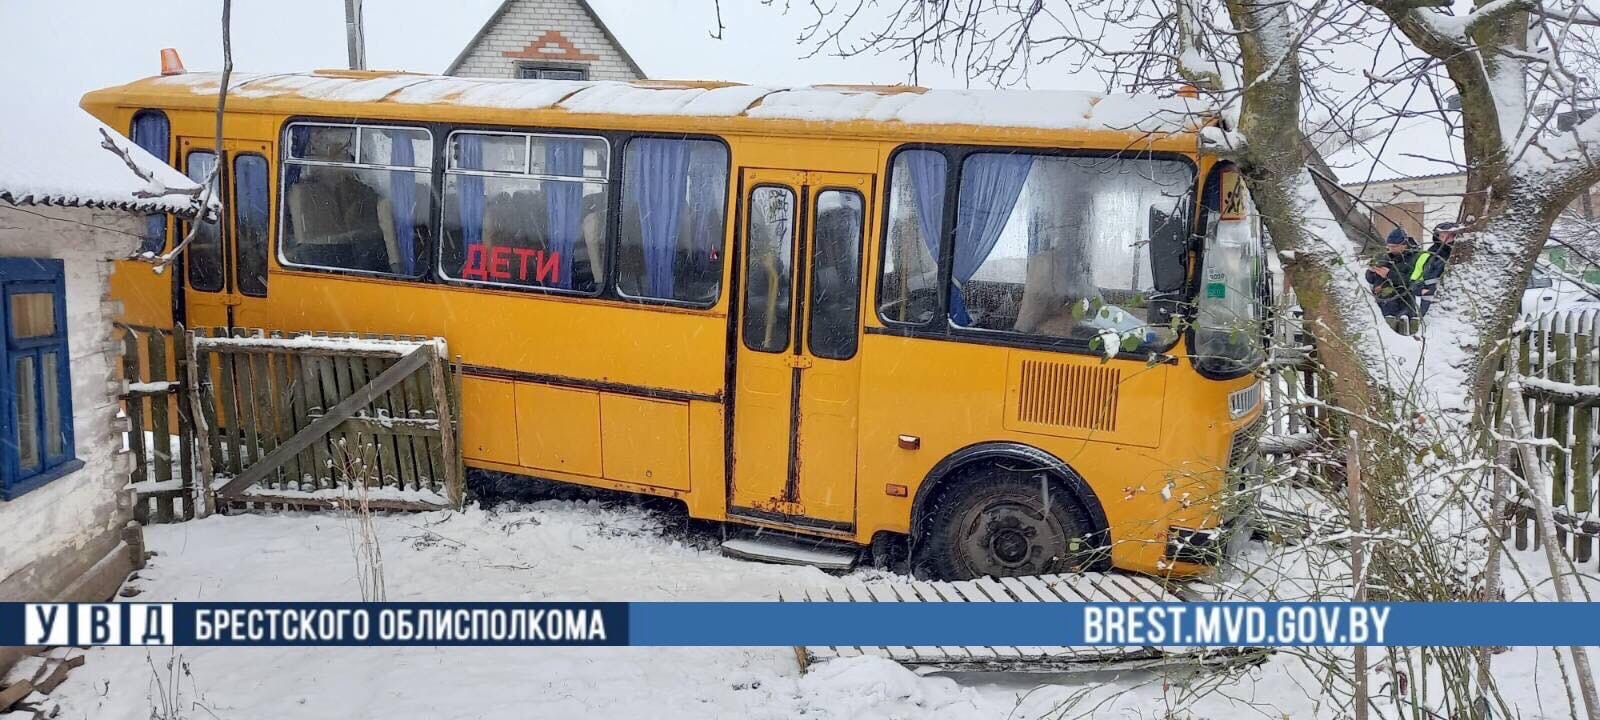 В Брестском районе школьный автобус с детьми протаранил забор